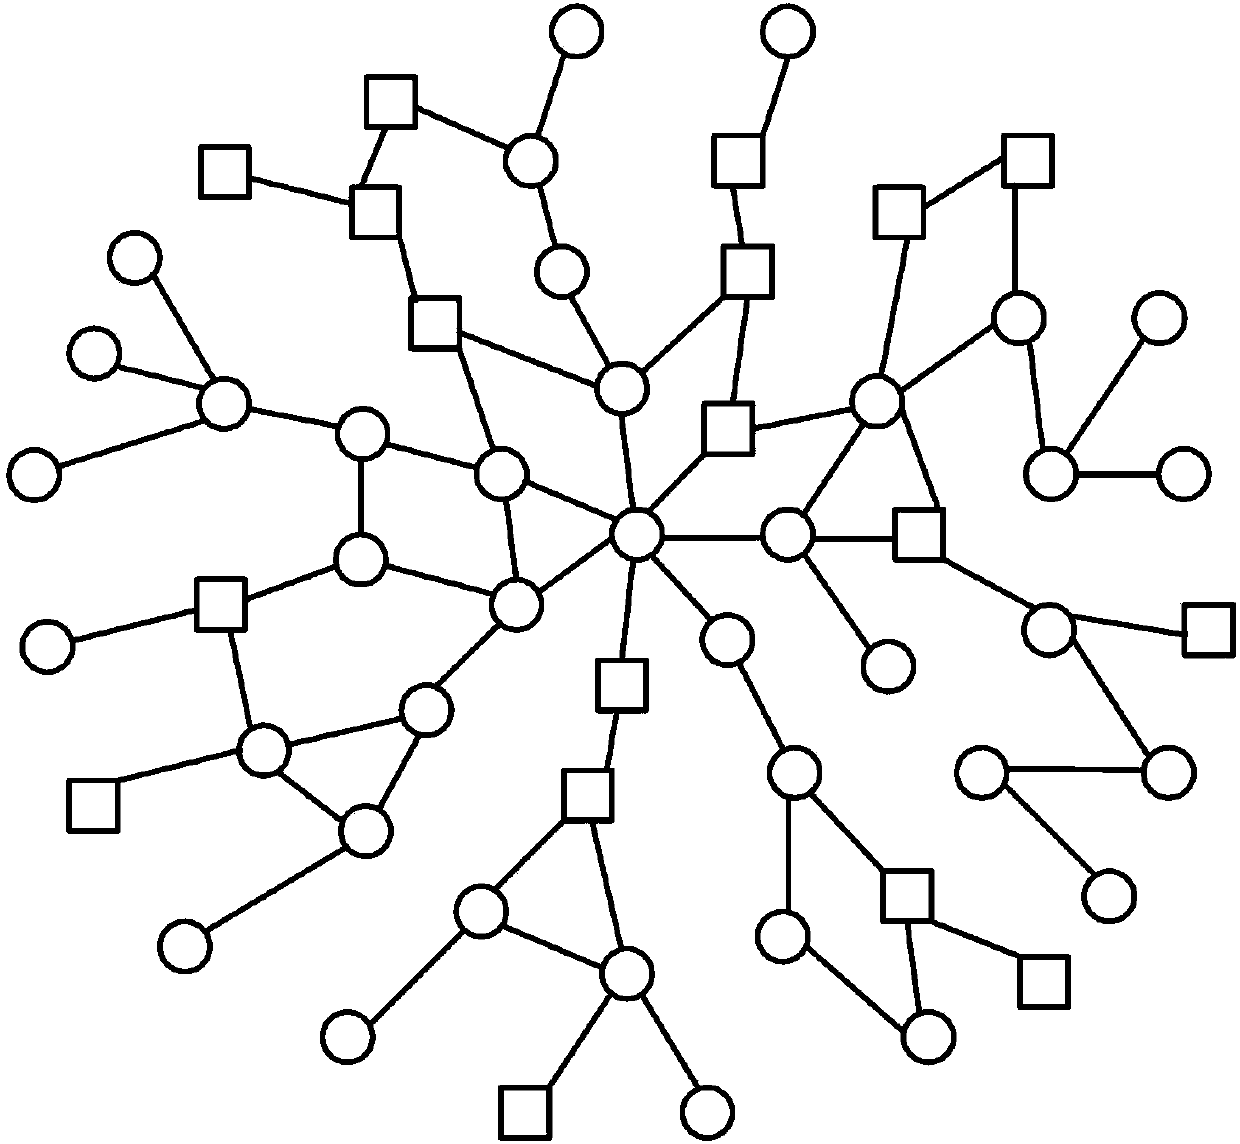 Rumor risk assessment method based on network risk entropy difference